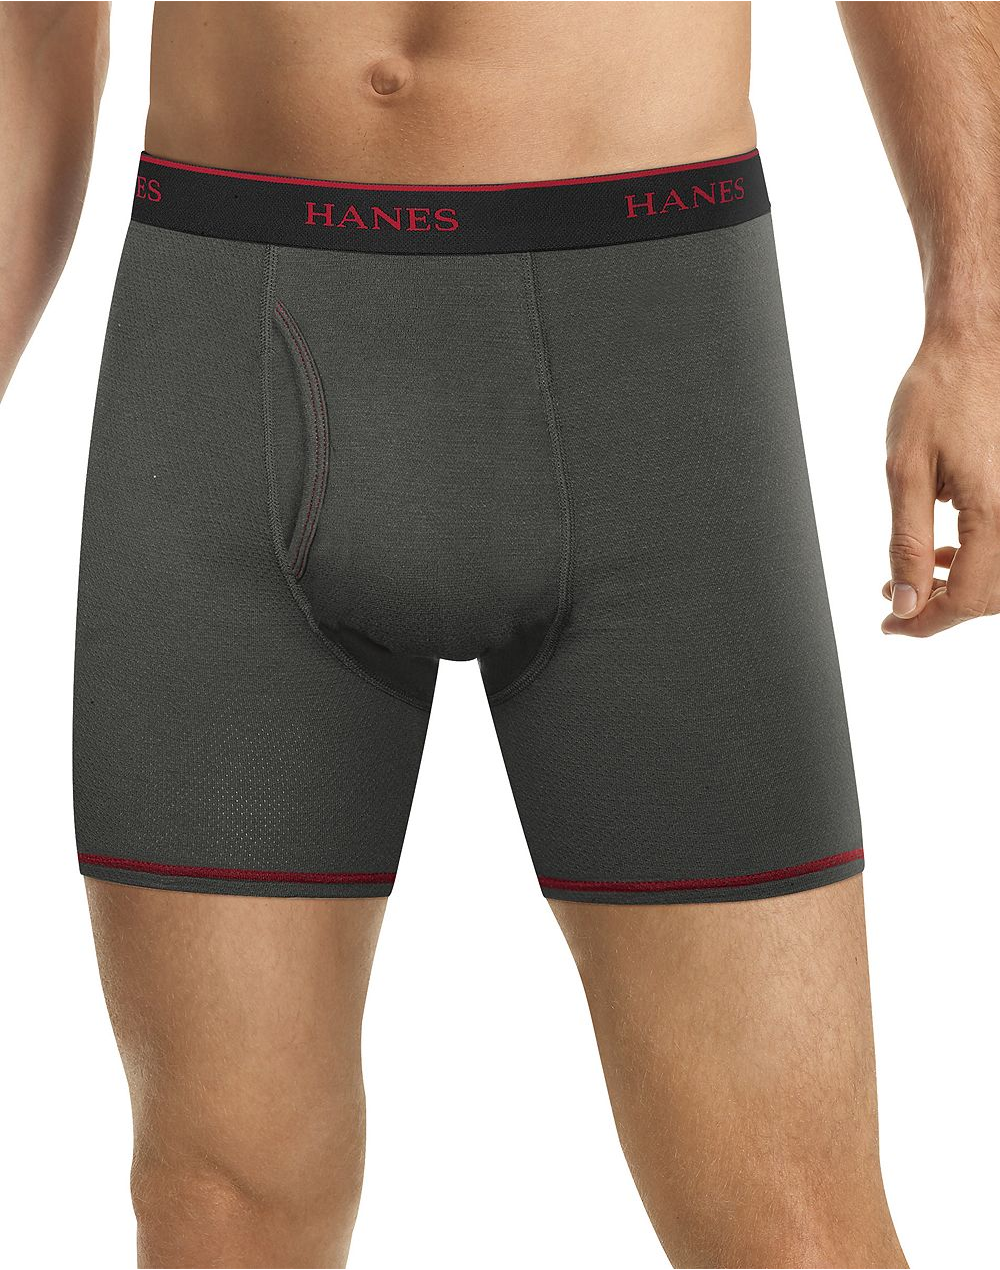 UNISE Mens Hanes Boxer Briefs Comfortable Briefs Soft Boyshorts Underwear for Men Pack Retro British